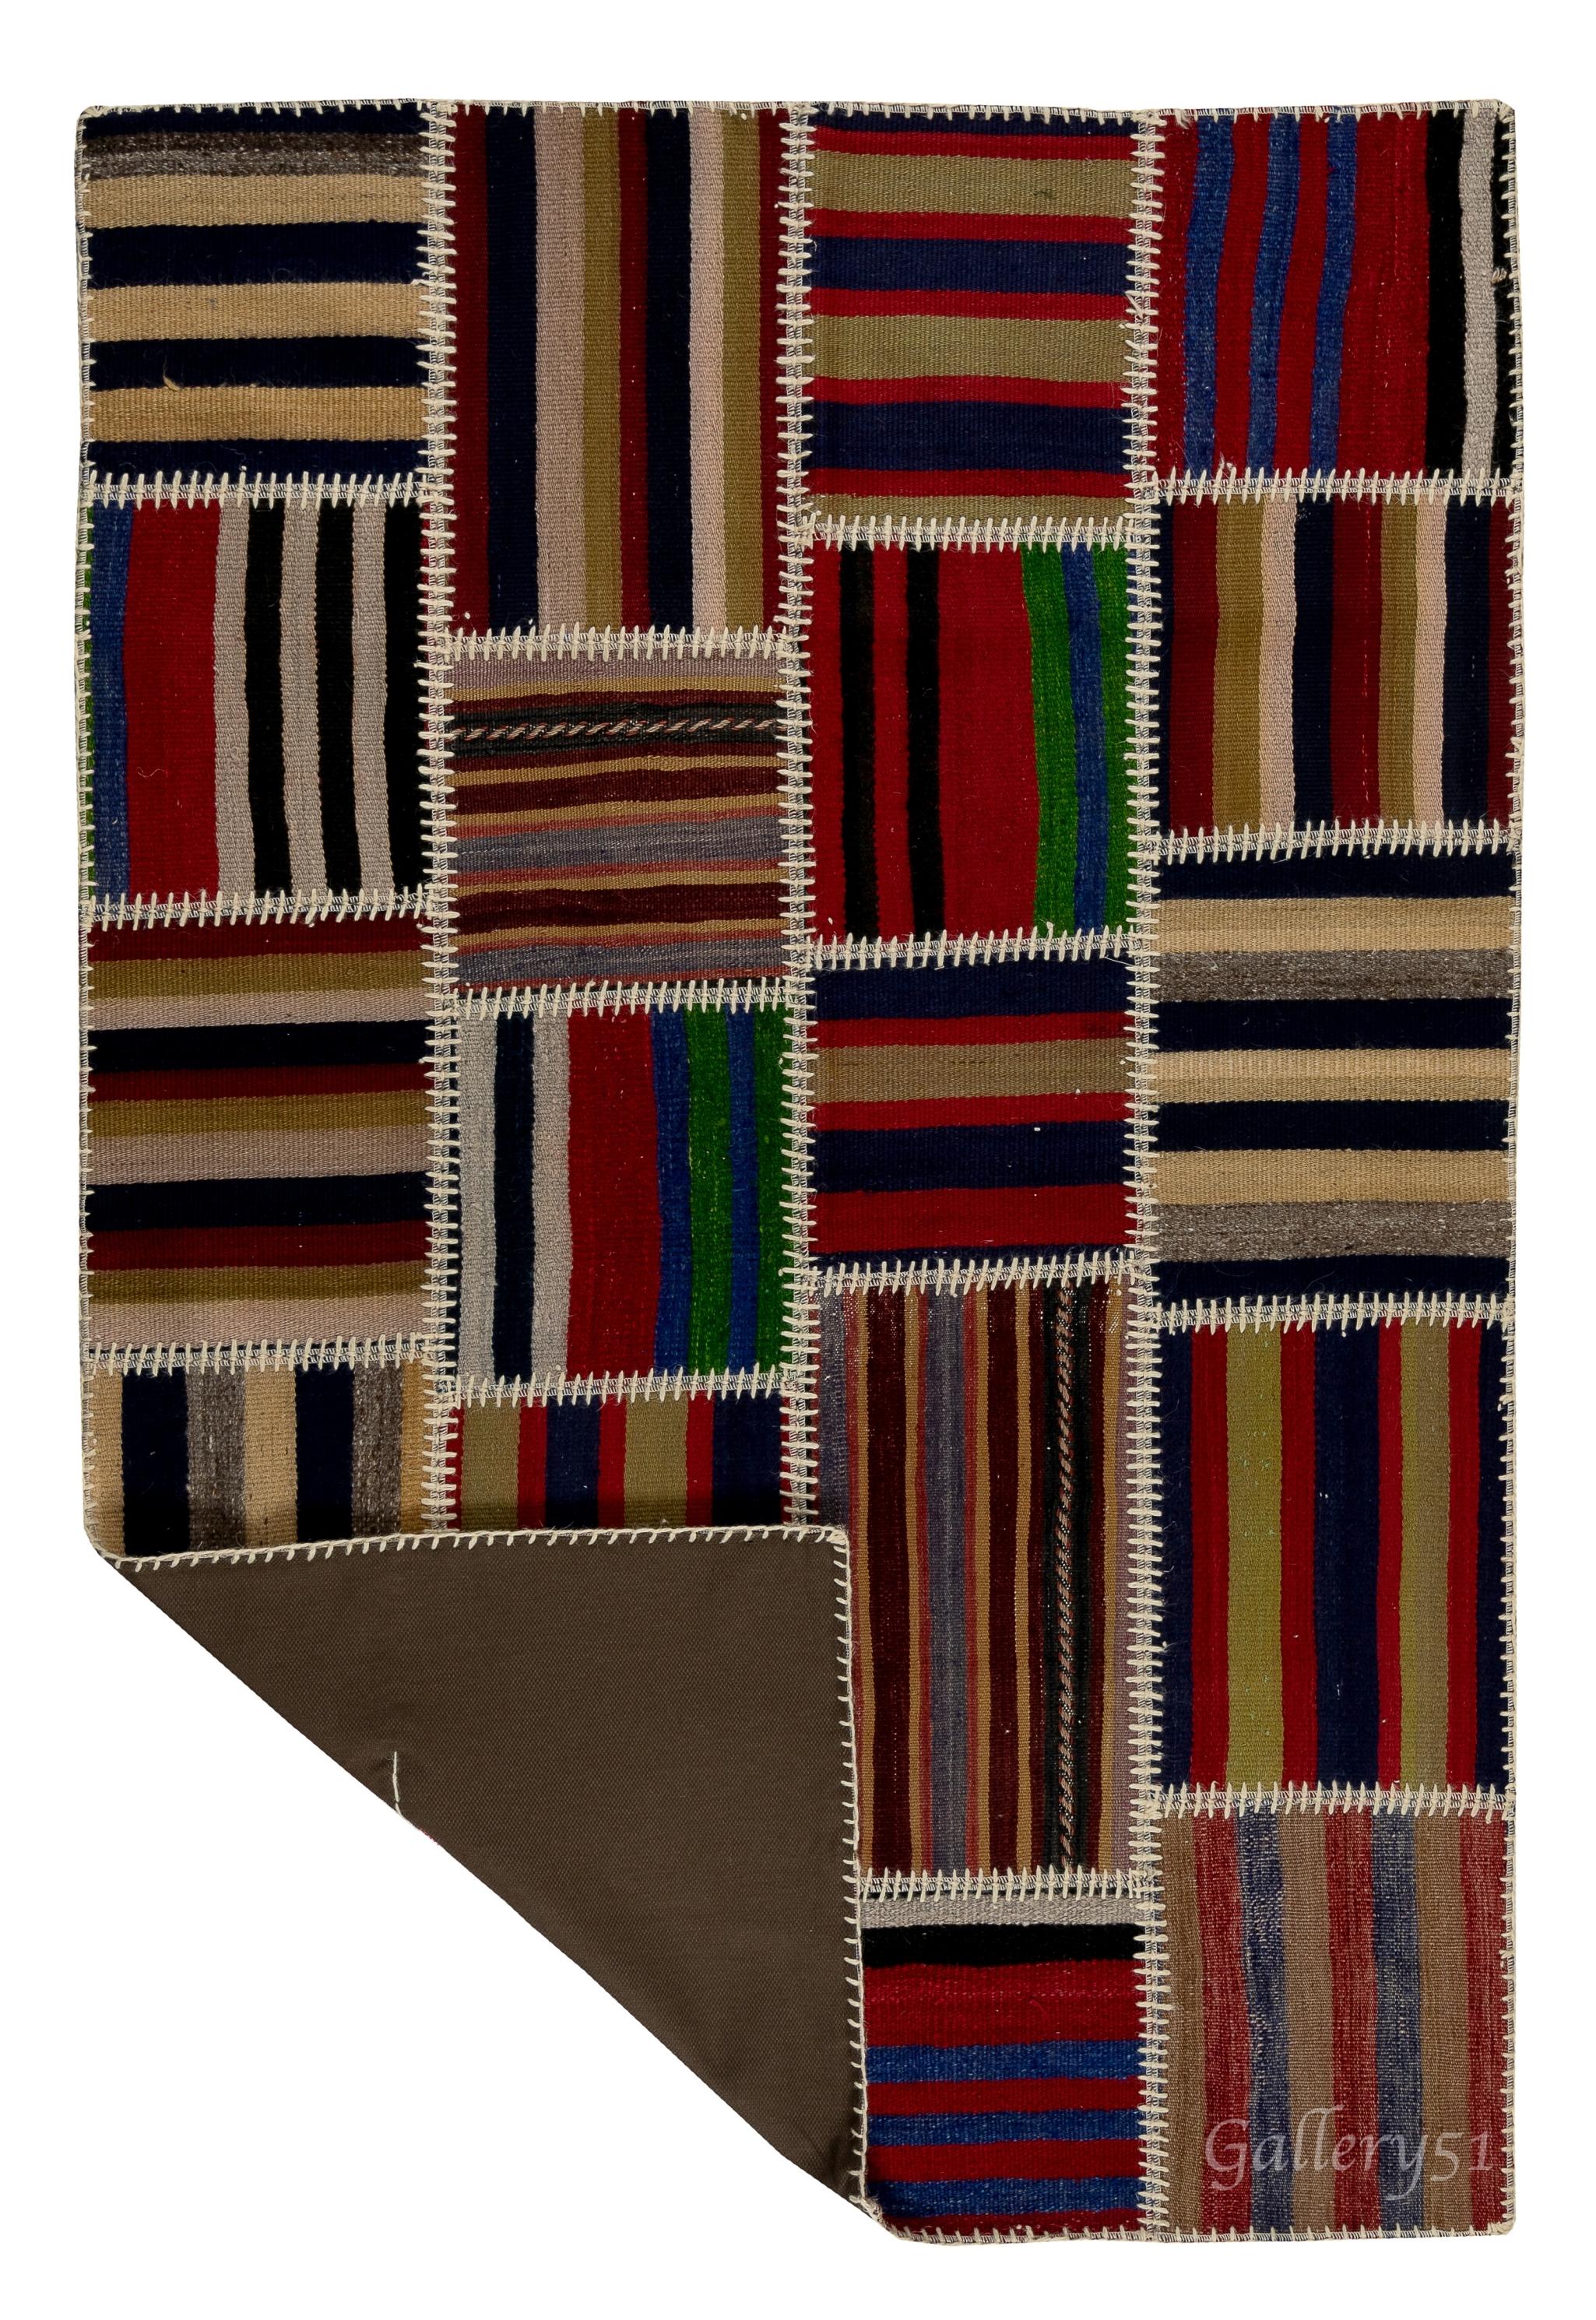 Dieser Patchwork-Teppich wird in Handarbeit aus verschiedenen Stücken alter türkischer Kilims (flachgewebte Teppiche) hergestellt. Er ist mit einem strapazierfähigen Baumwollköper/Unterlage verstärkt, der auf der Rückseite für eine glatte Oberfläche